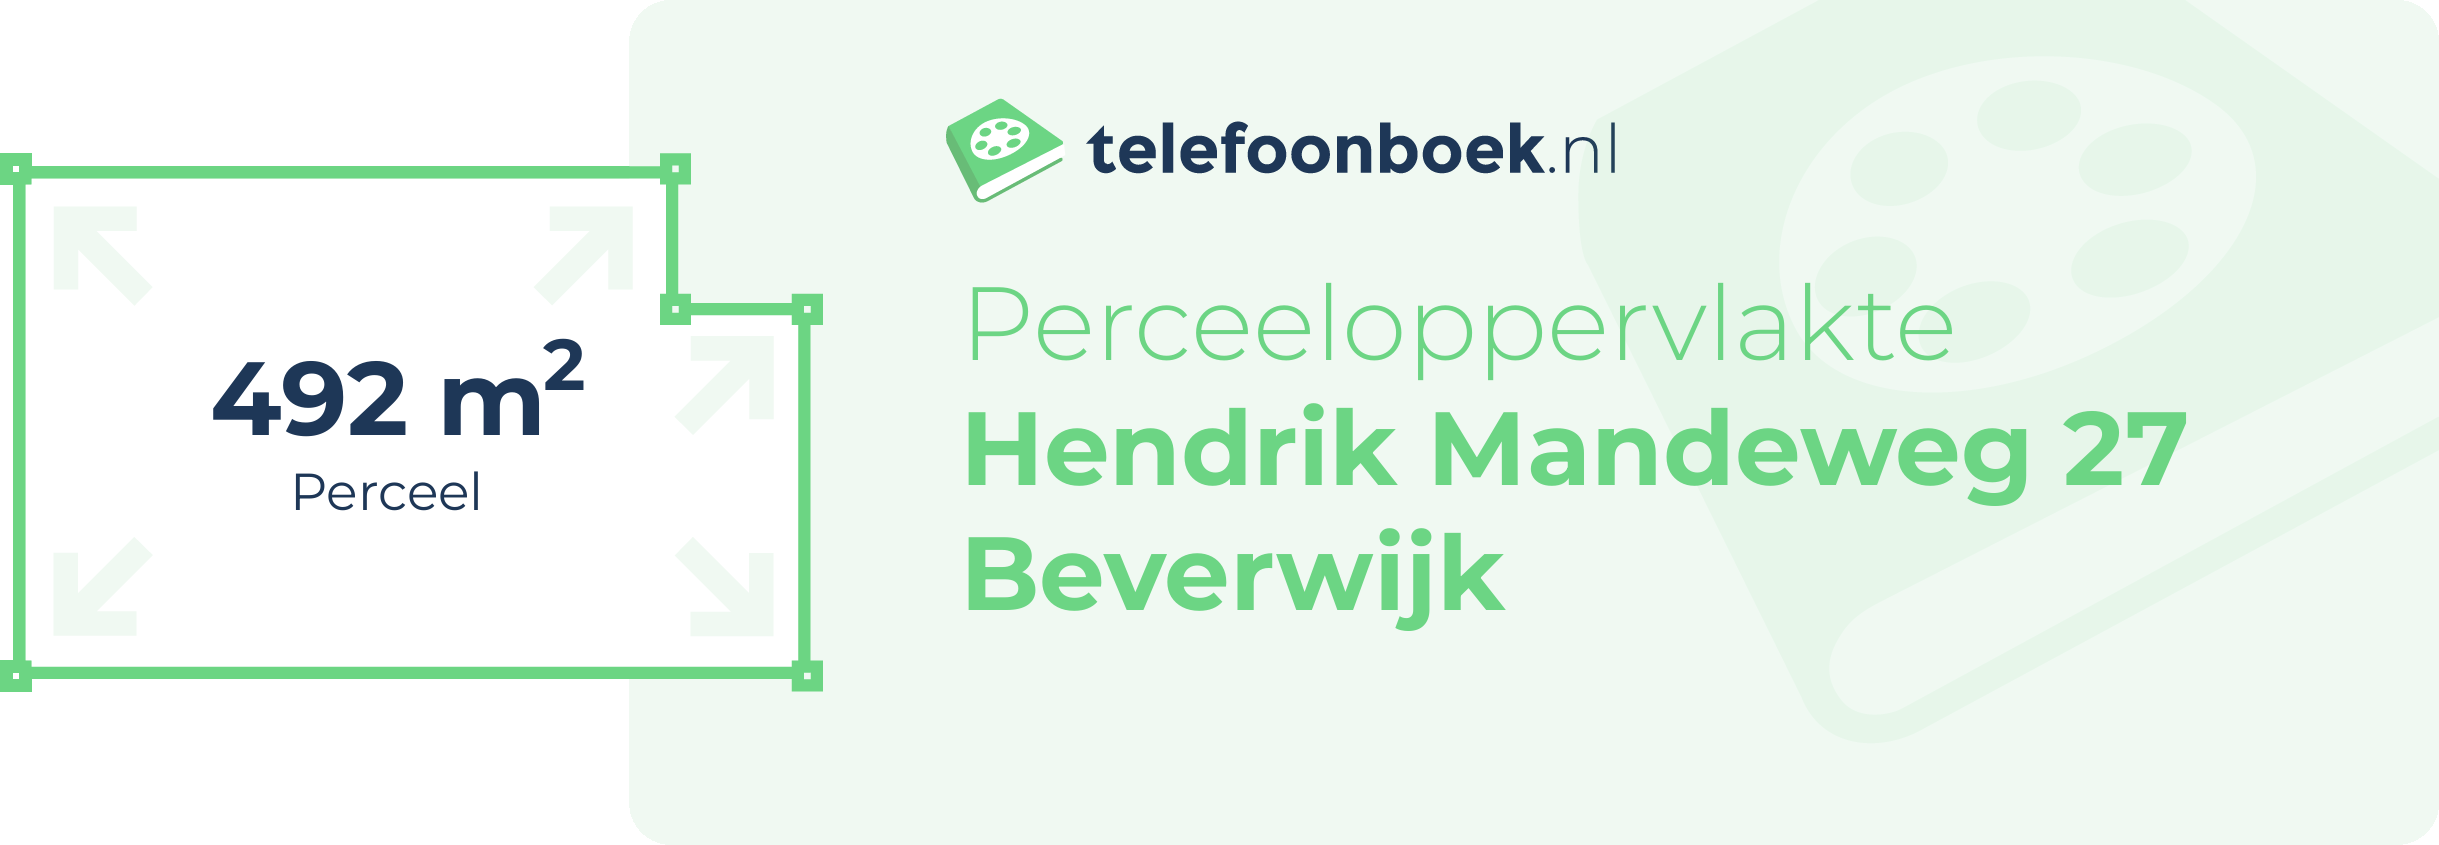 Perceeloppervlakte Hendrik Mandeweg 27 Beverwijk